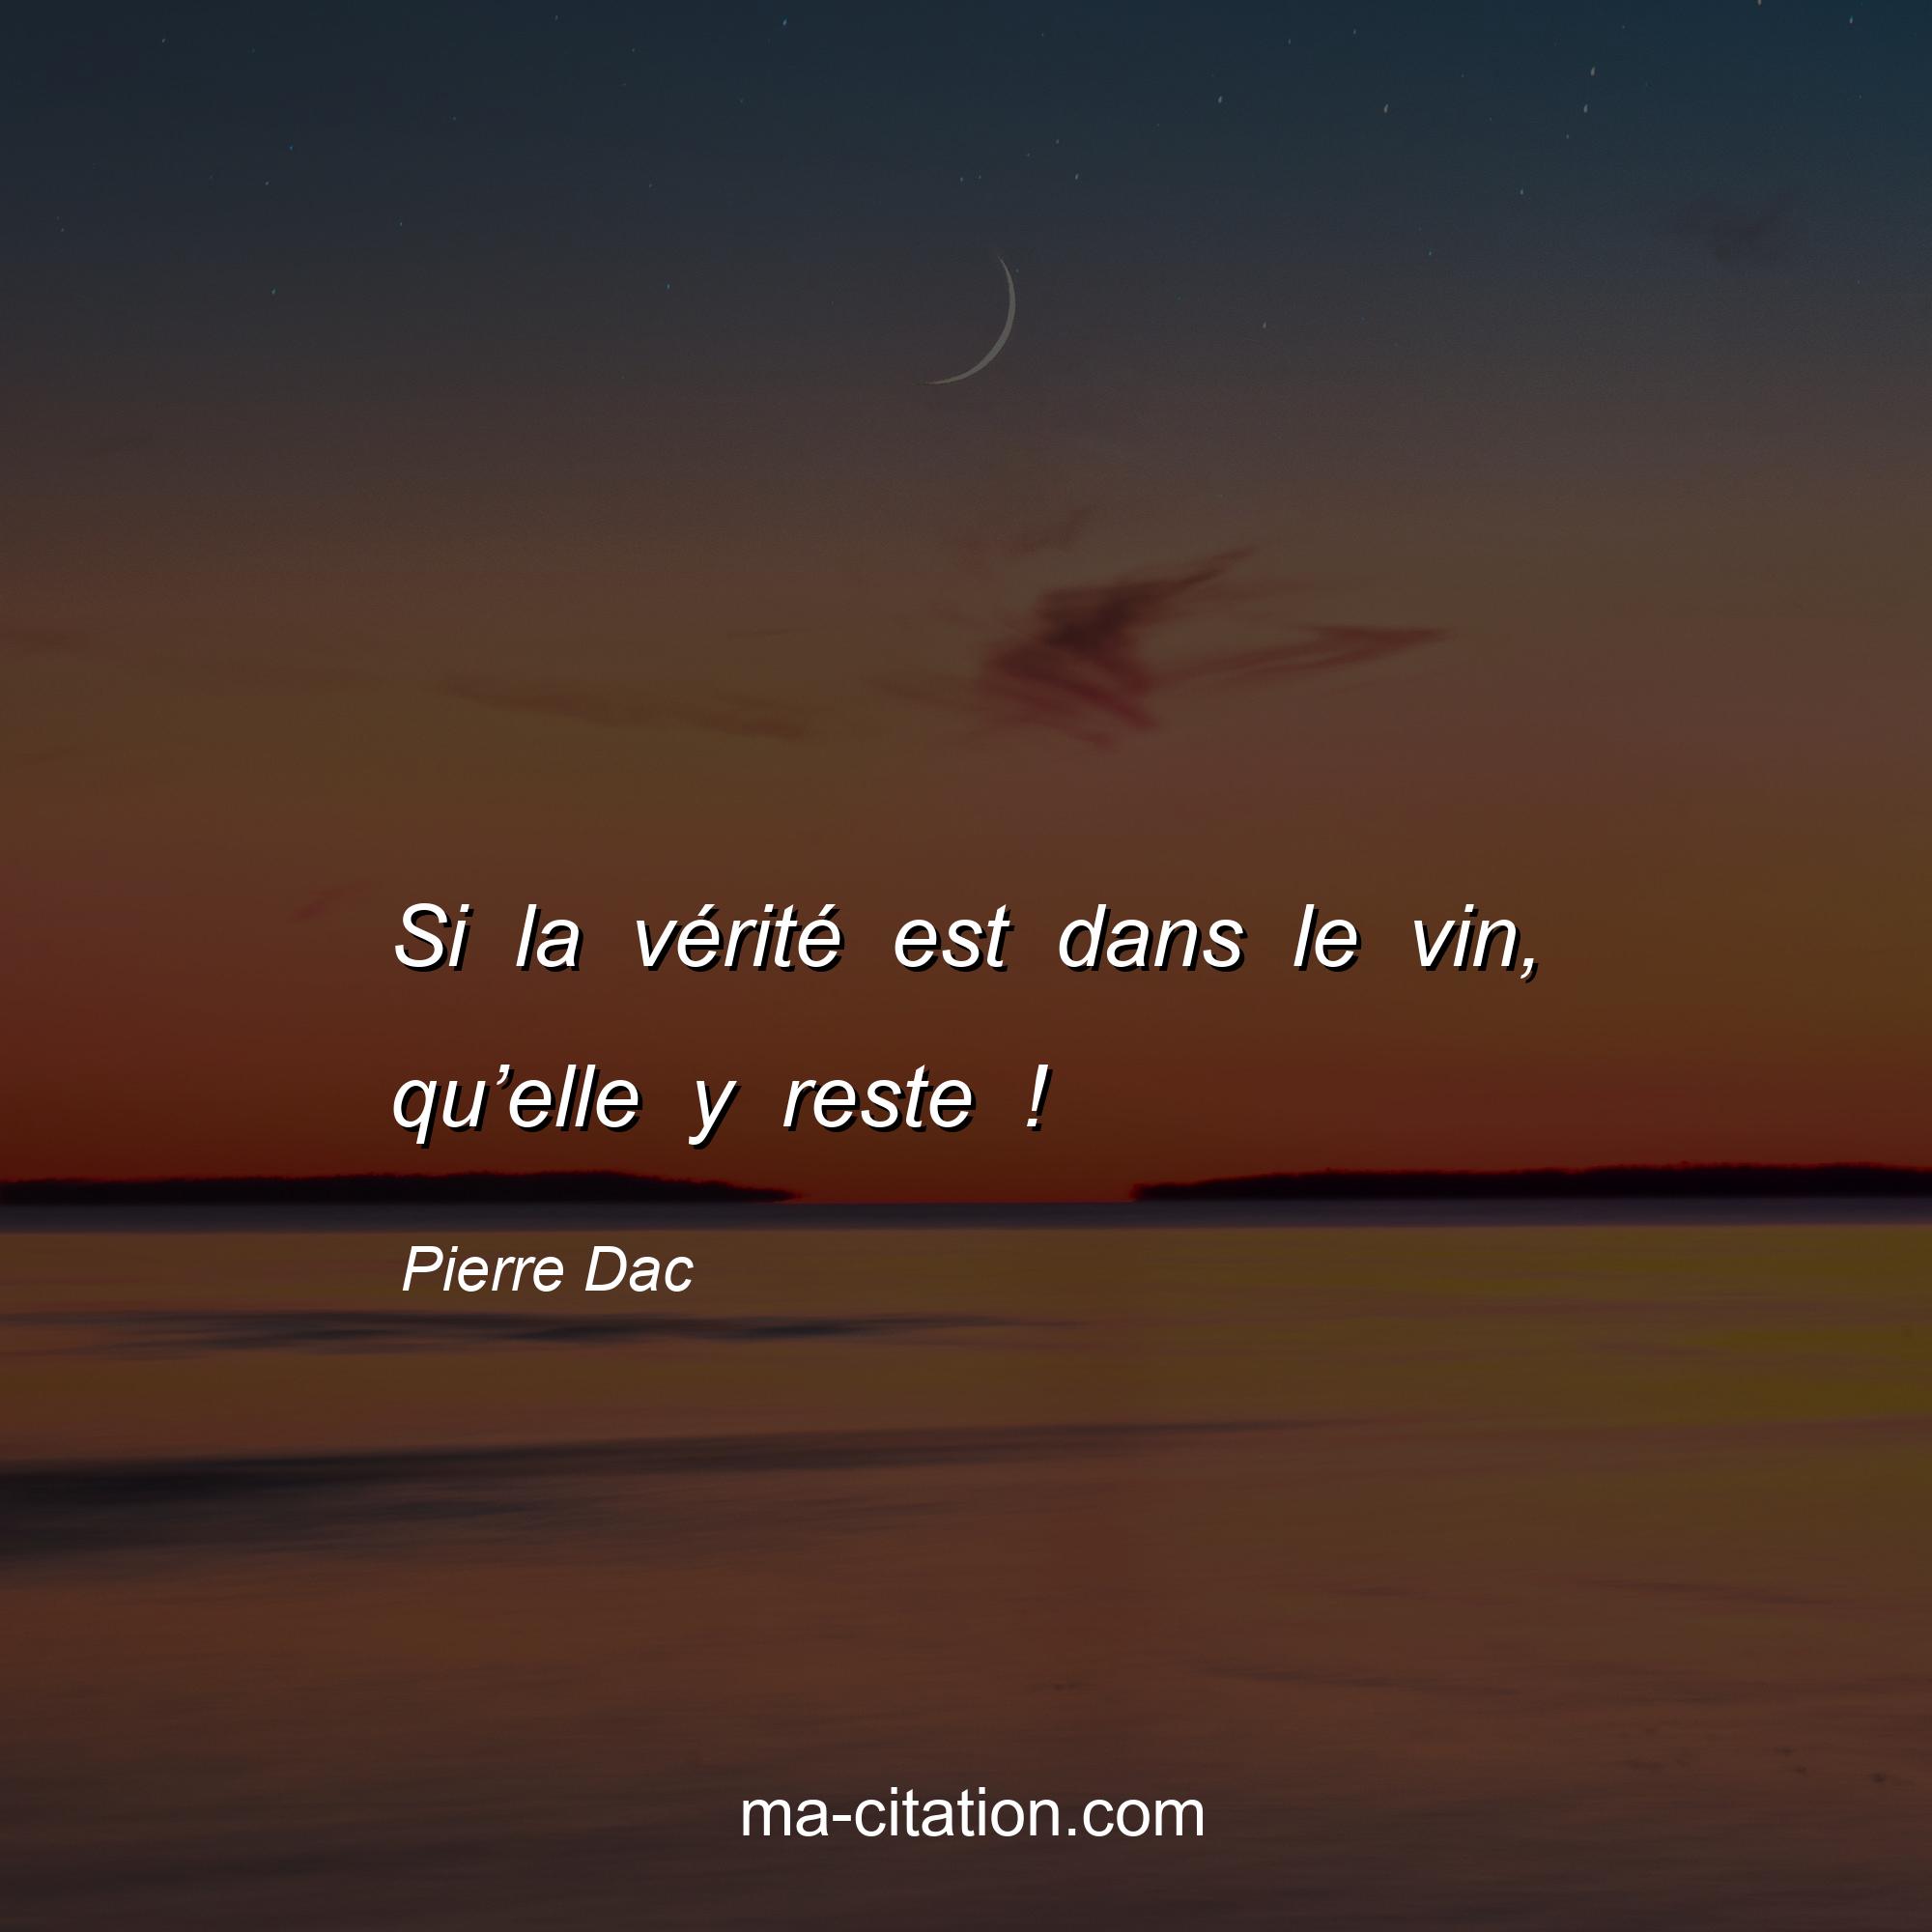 Pierre Dac : Si la vérité est dans le vin, qu’elle y reste !